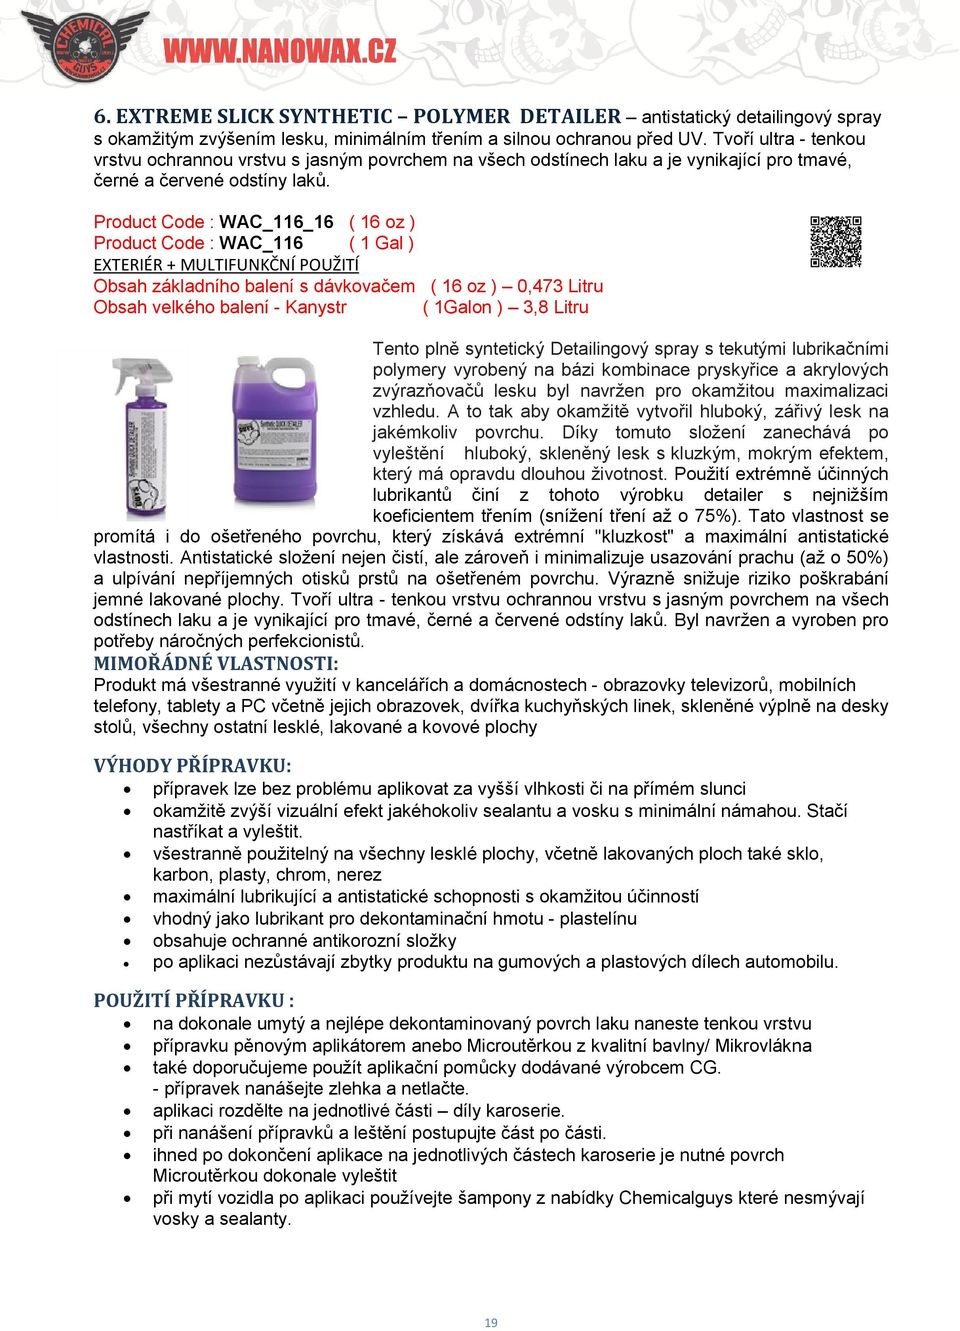 Product Code : WAC_116_16 ( 16 oz ) Product Code : WAC_116 ( 1 Gal ) Obsah velkého balení - Kanystr ( 1Galon ) 3,8 Litru Tento plně syntetický Detailingový spray s tekutými lubrikačními polymery